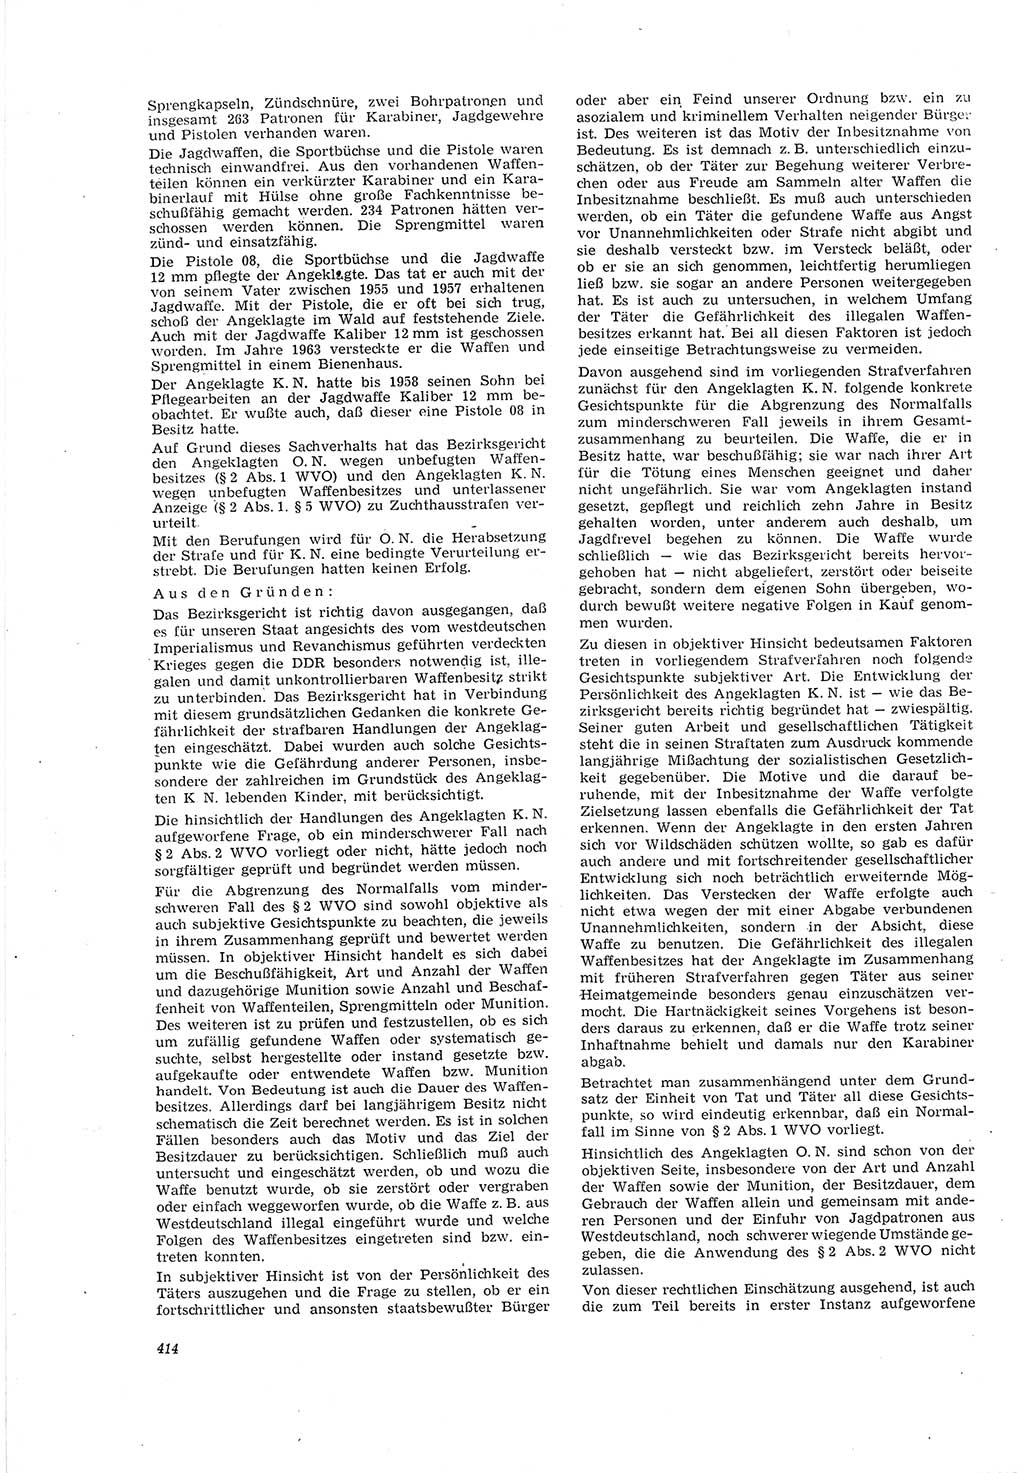 Neue Justiz (NJ), Zeitschrift für Recht und Rechtswissenschaft [Deutsche Demokratische Republik (DDR)], 20. Jahrgang 1966, Seite 414 (NJ DDR 1966, S. 414)